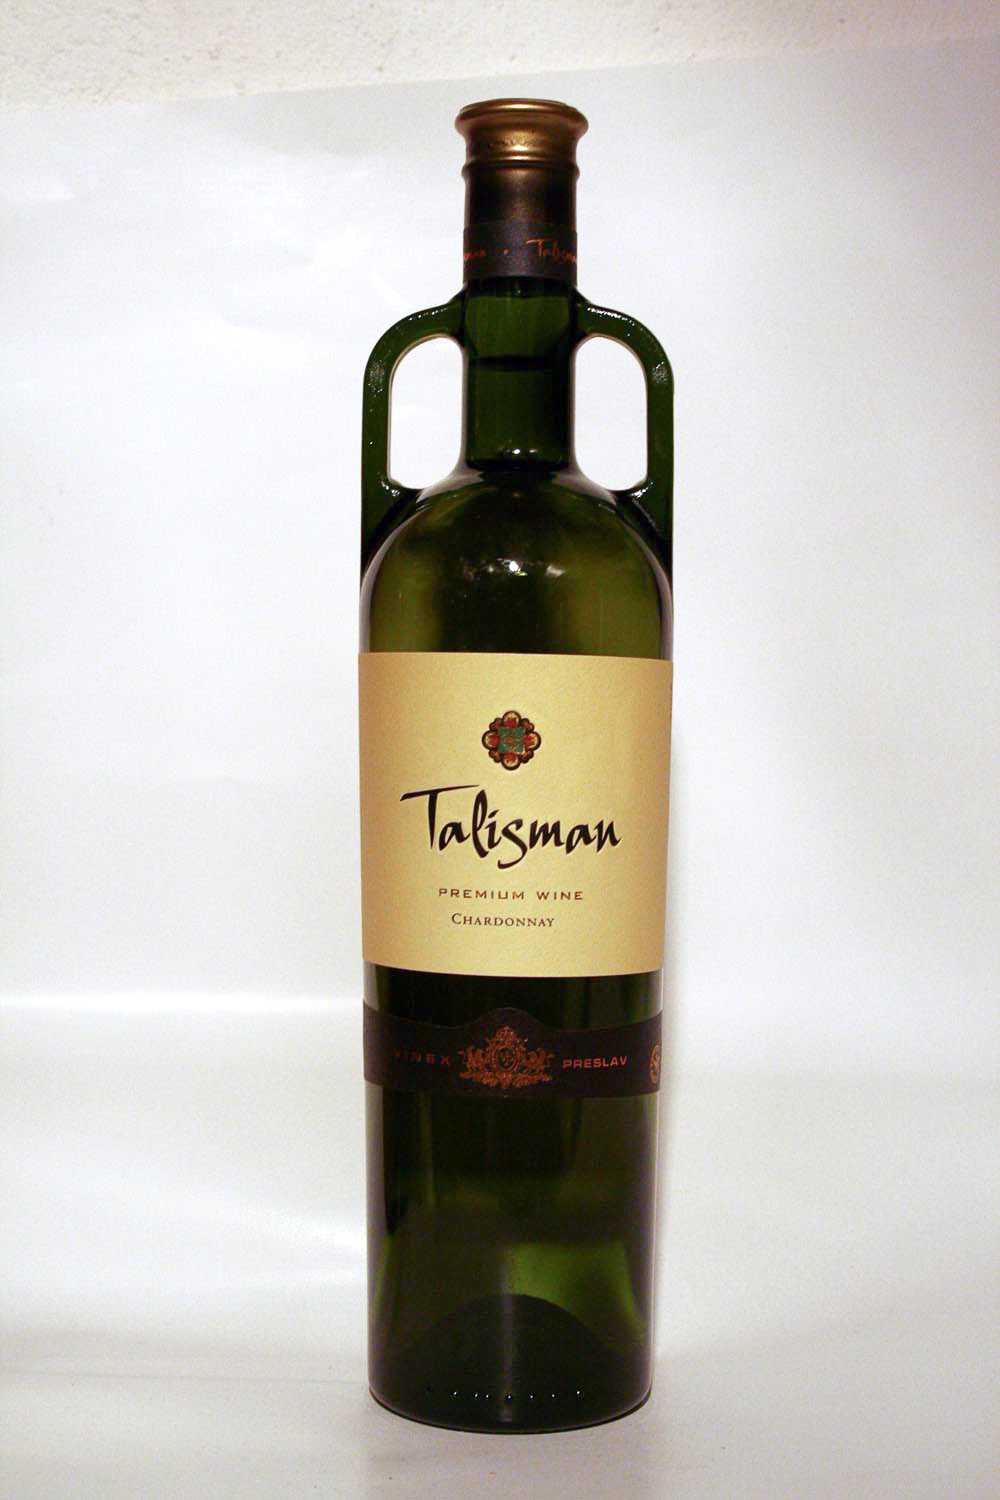 Talisman Shardonnay 2006